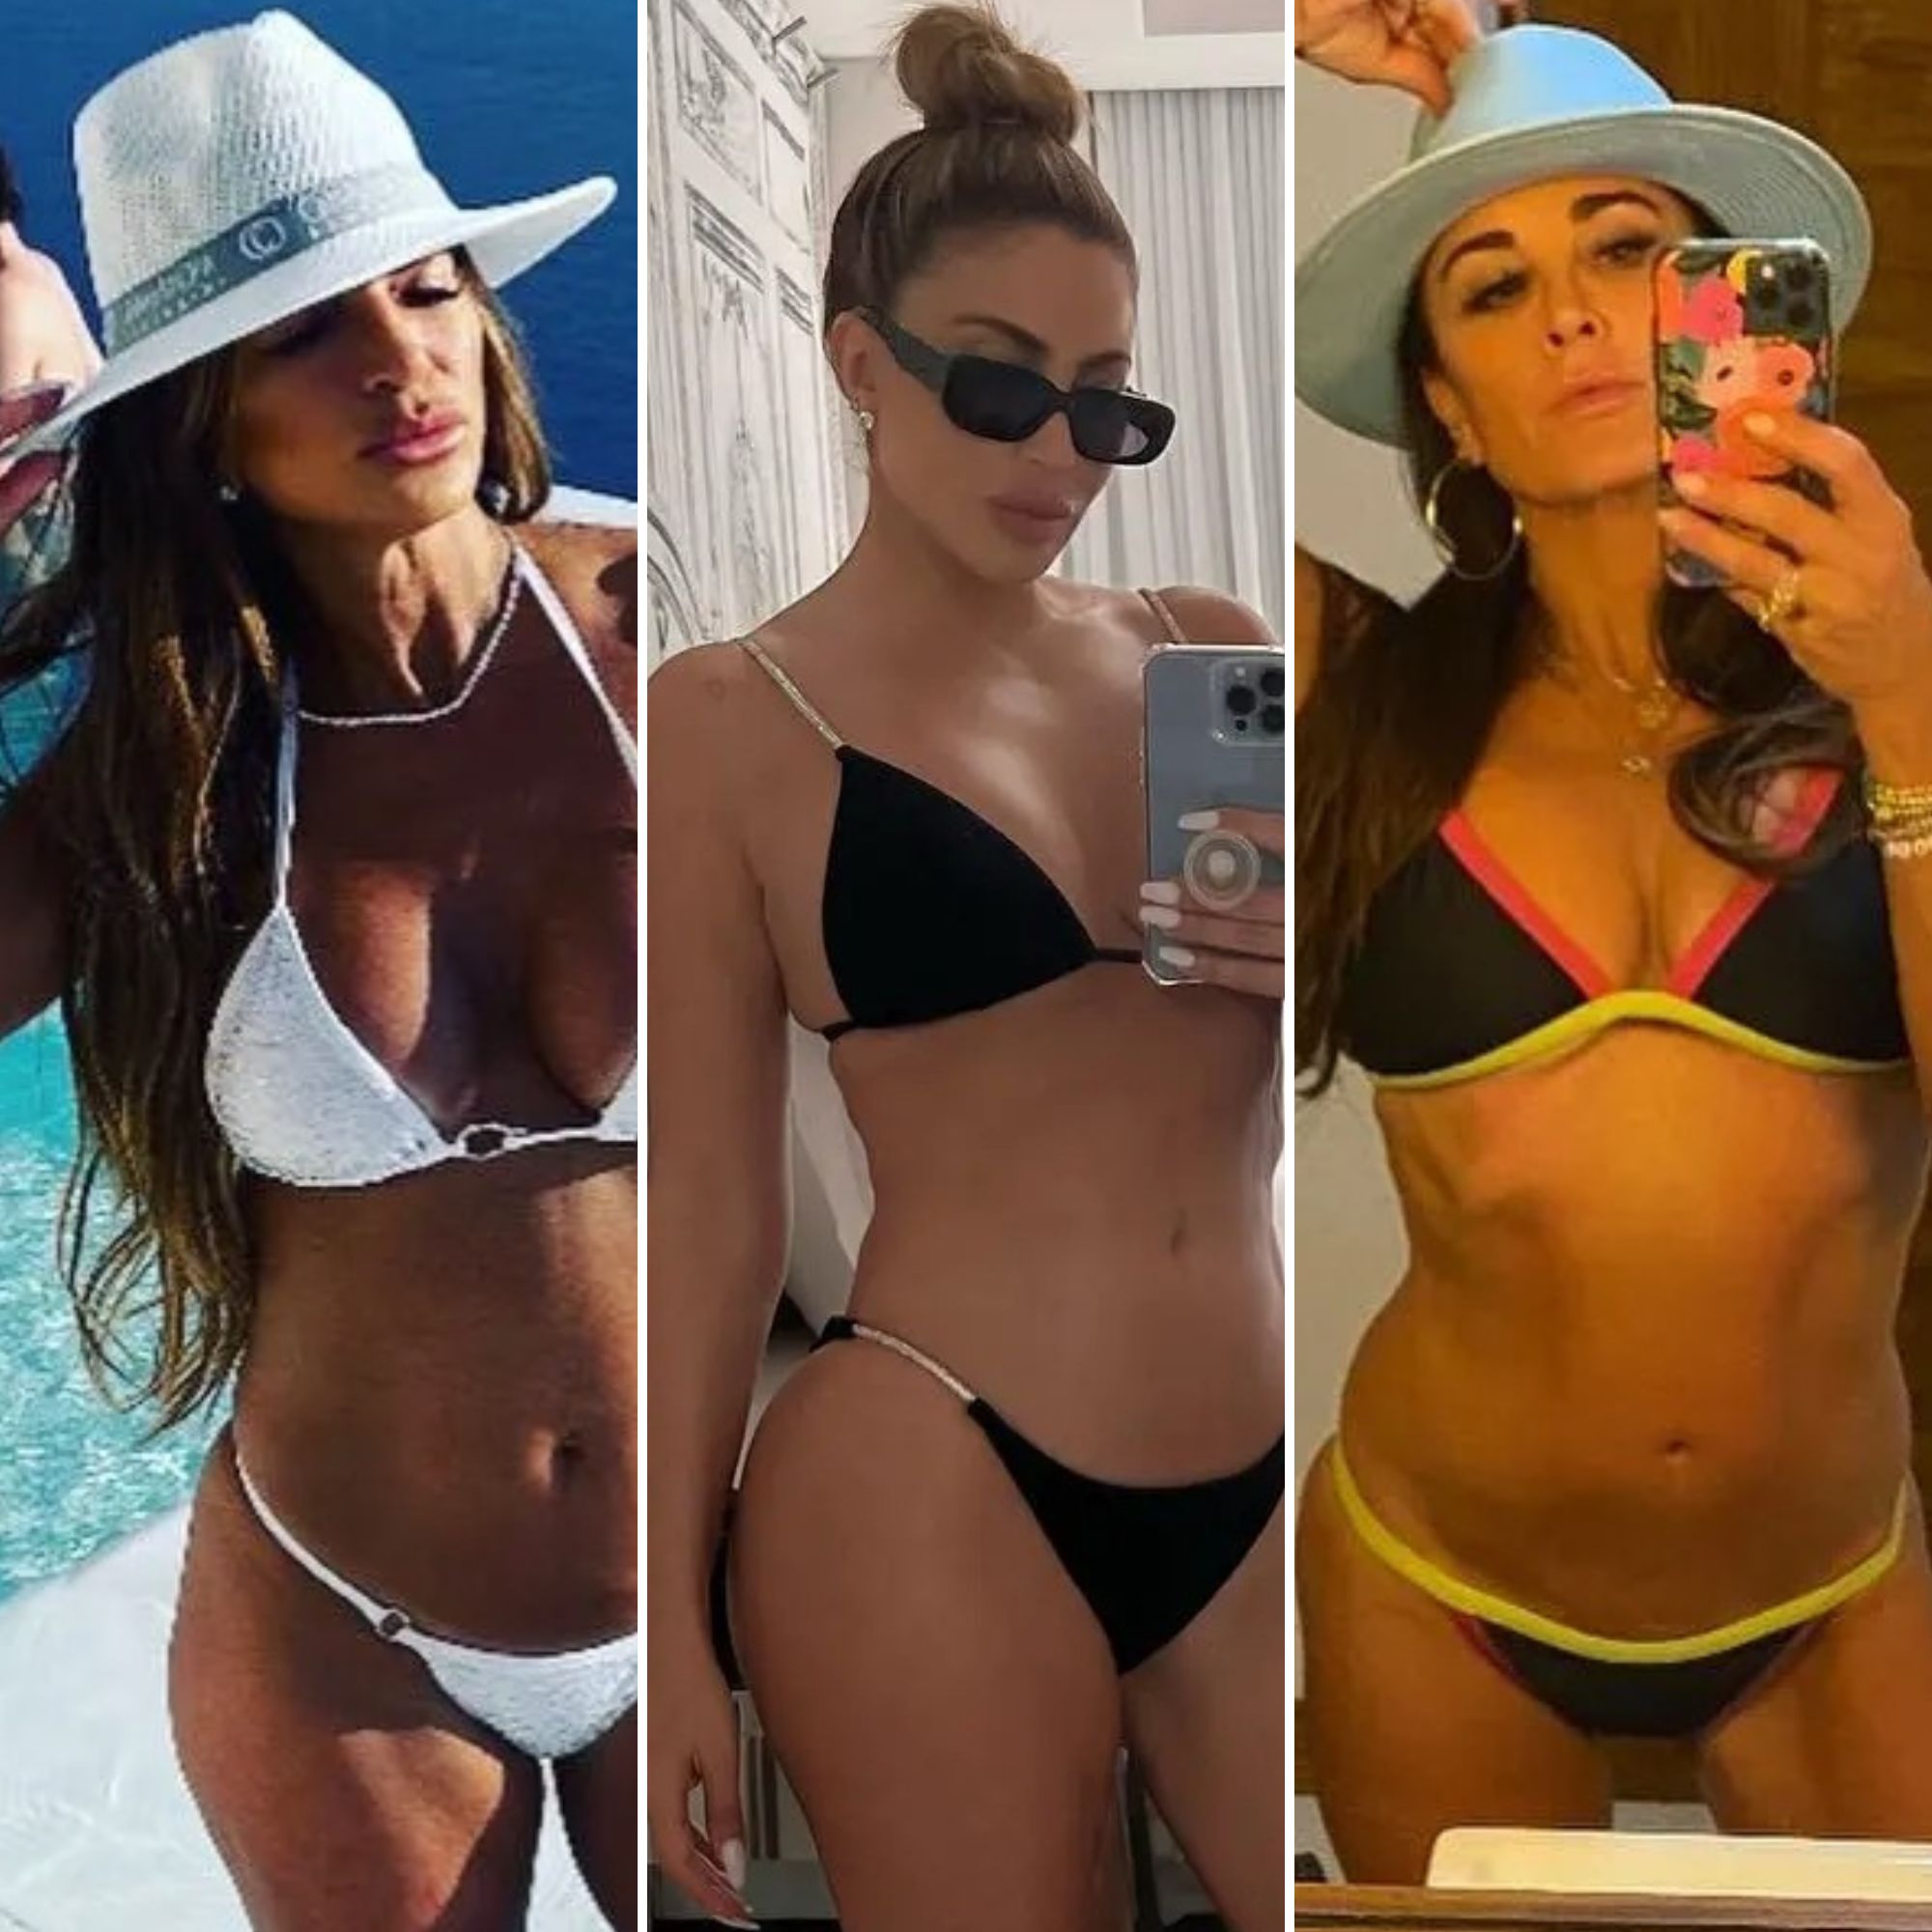 Wife Nude Beach Game - Real Housewives' Bikini Photos: Teresa, Luann, Kim and More